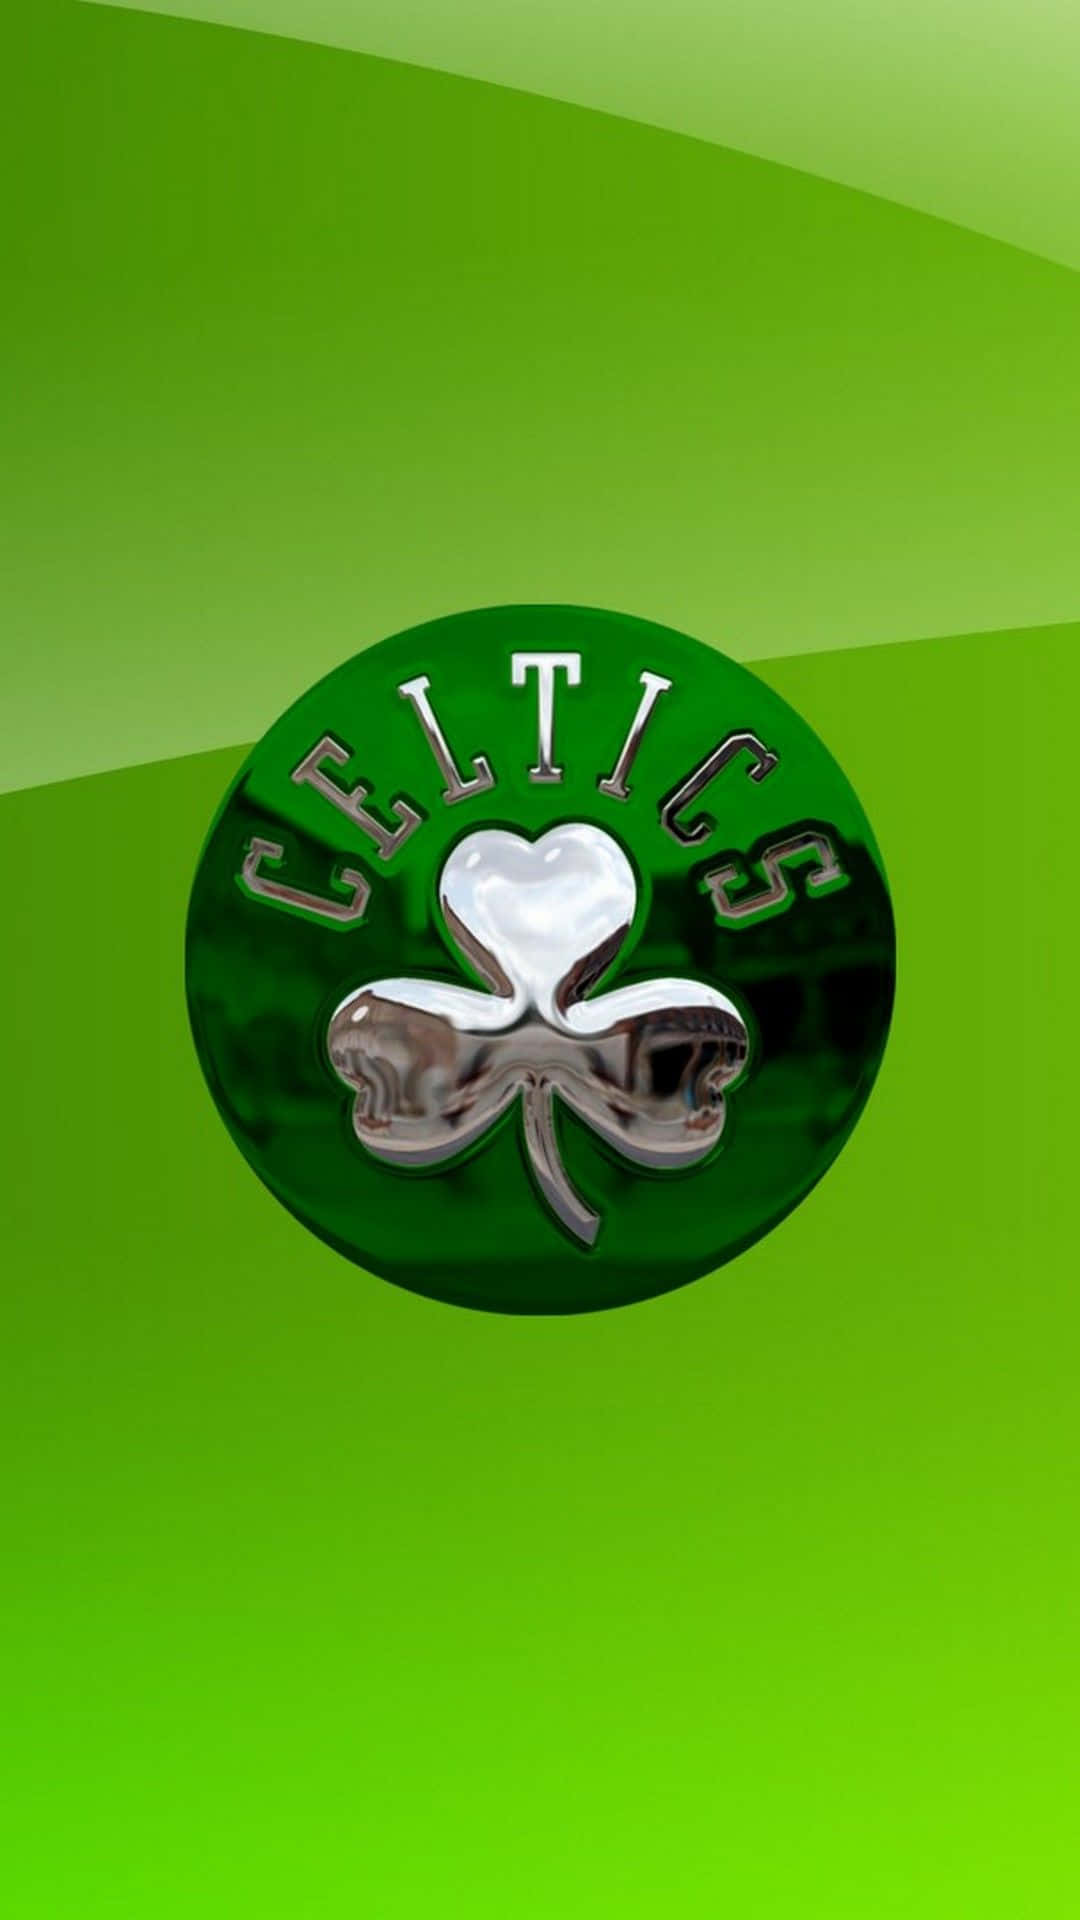 Celtics-logoet 1080 X 1920 Wallpaper